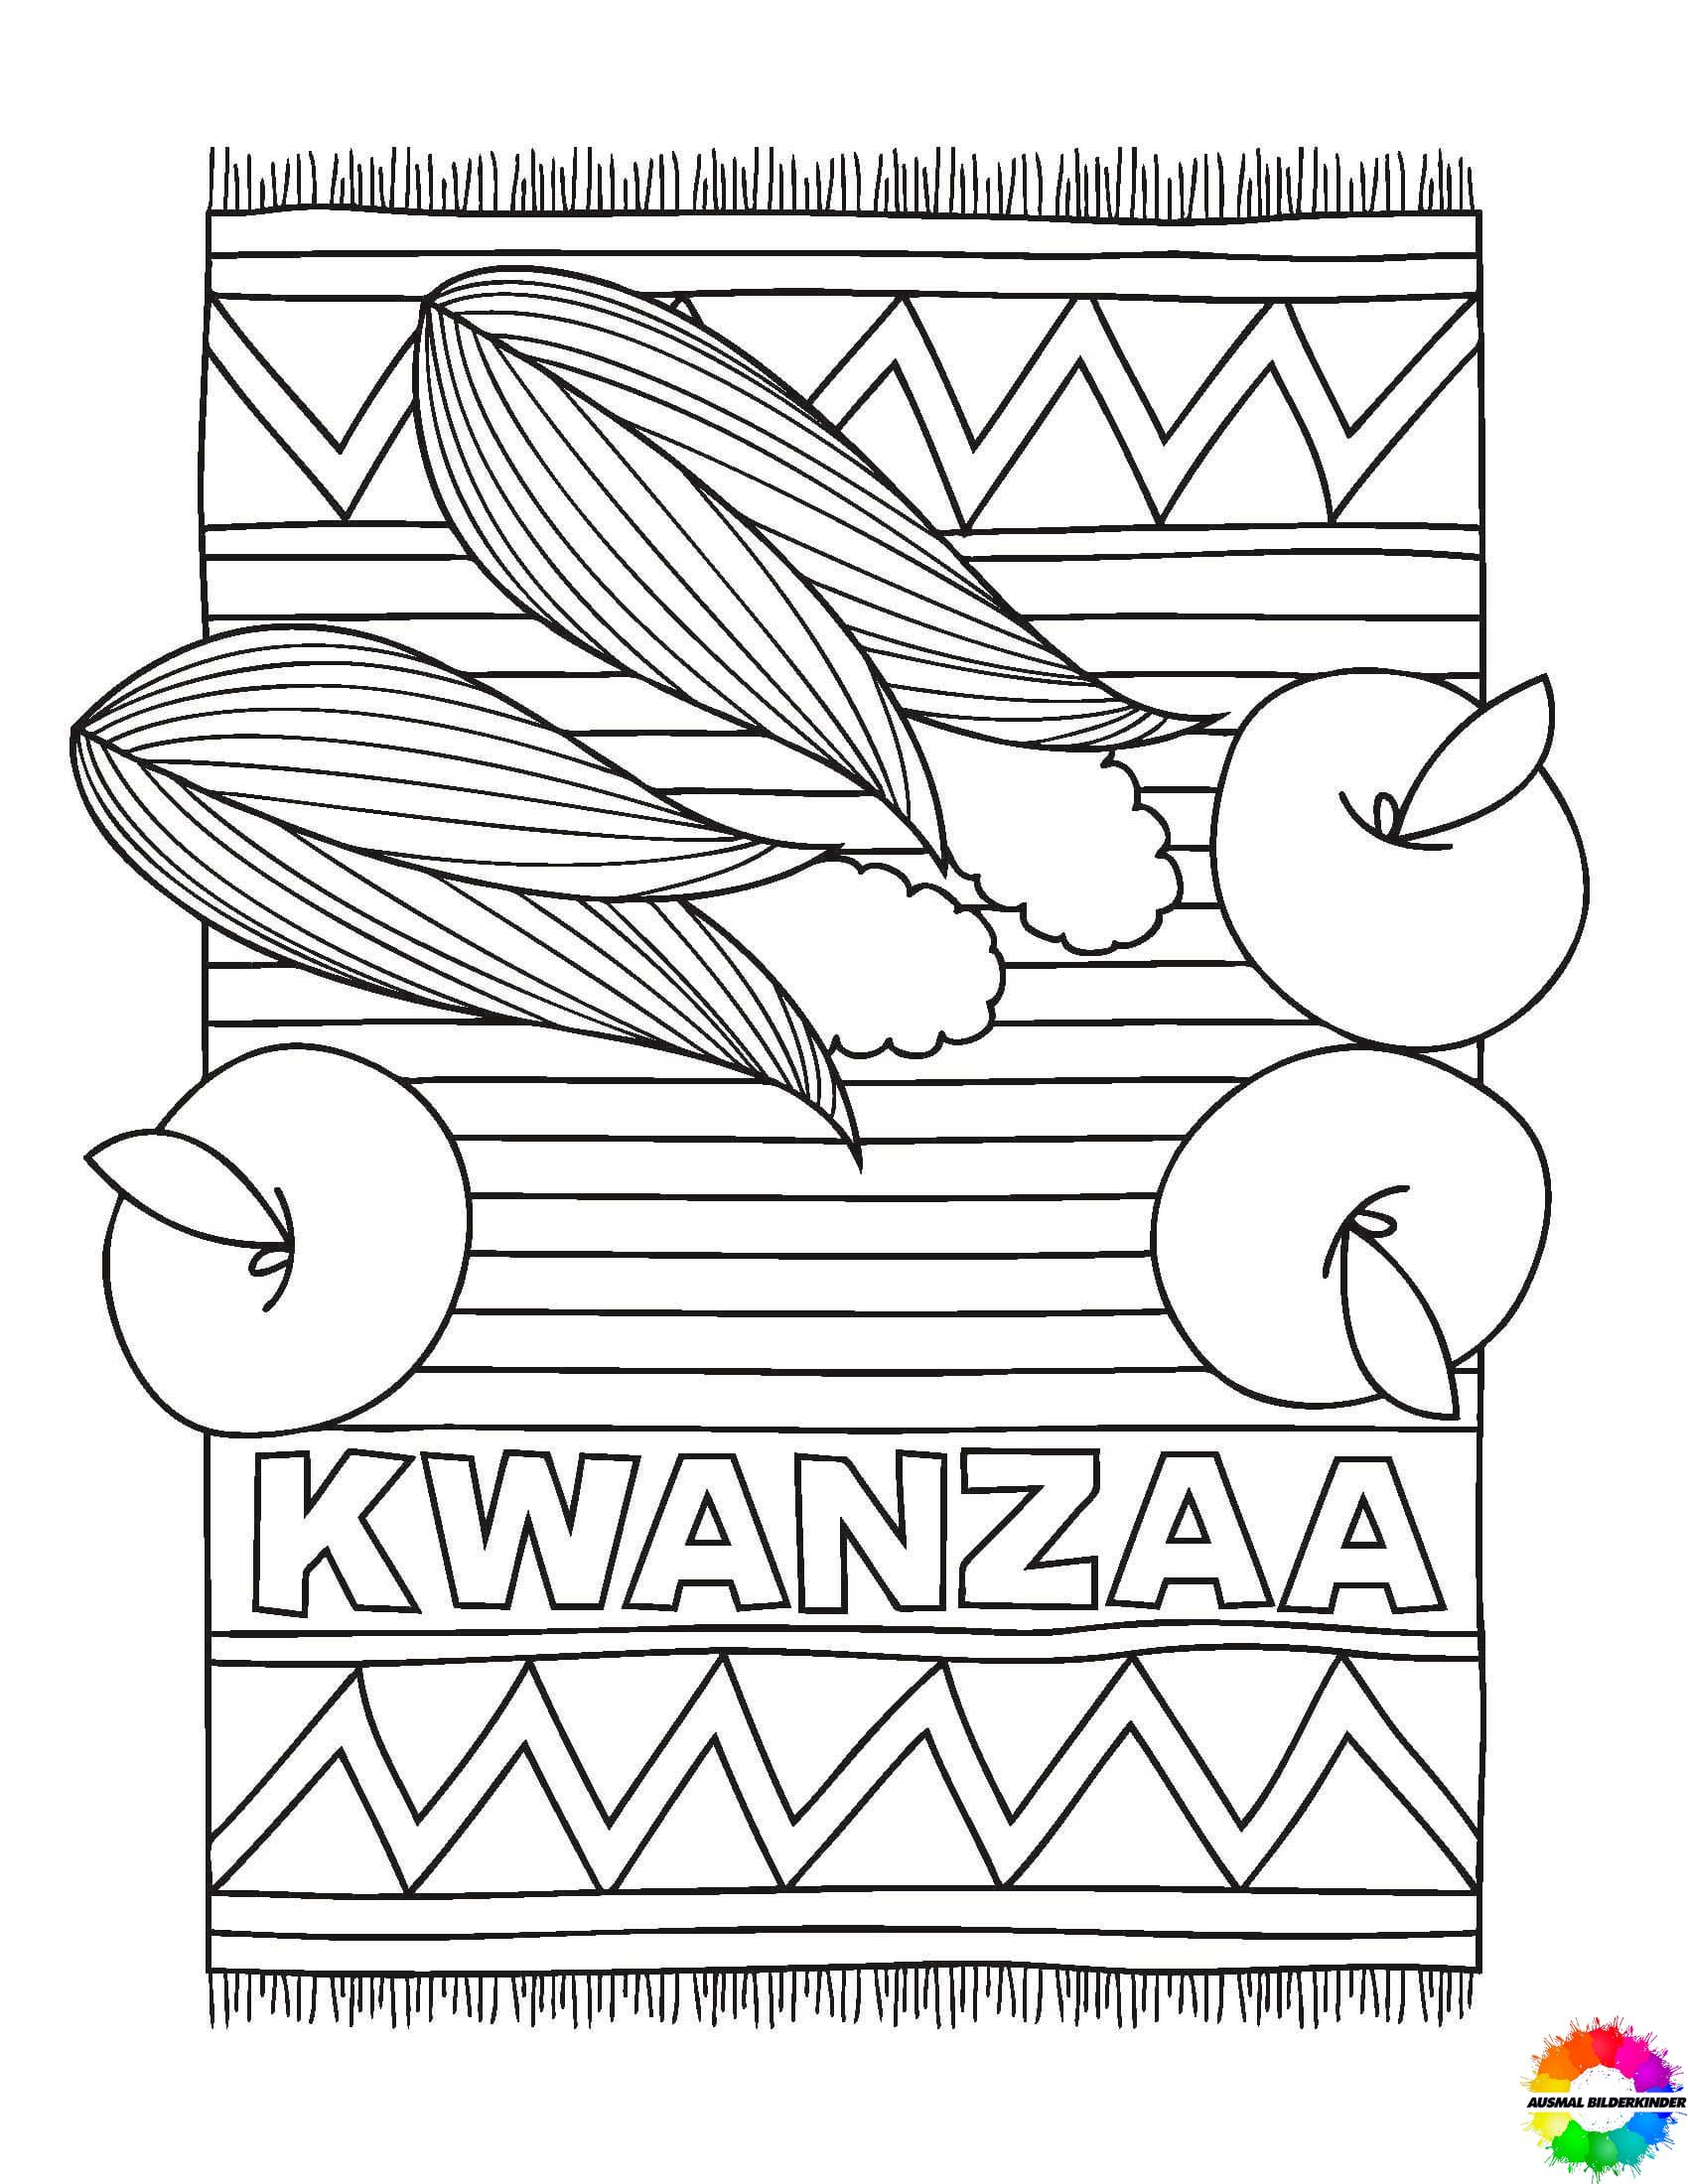 Kwanzaa 20